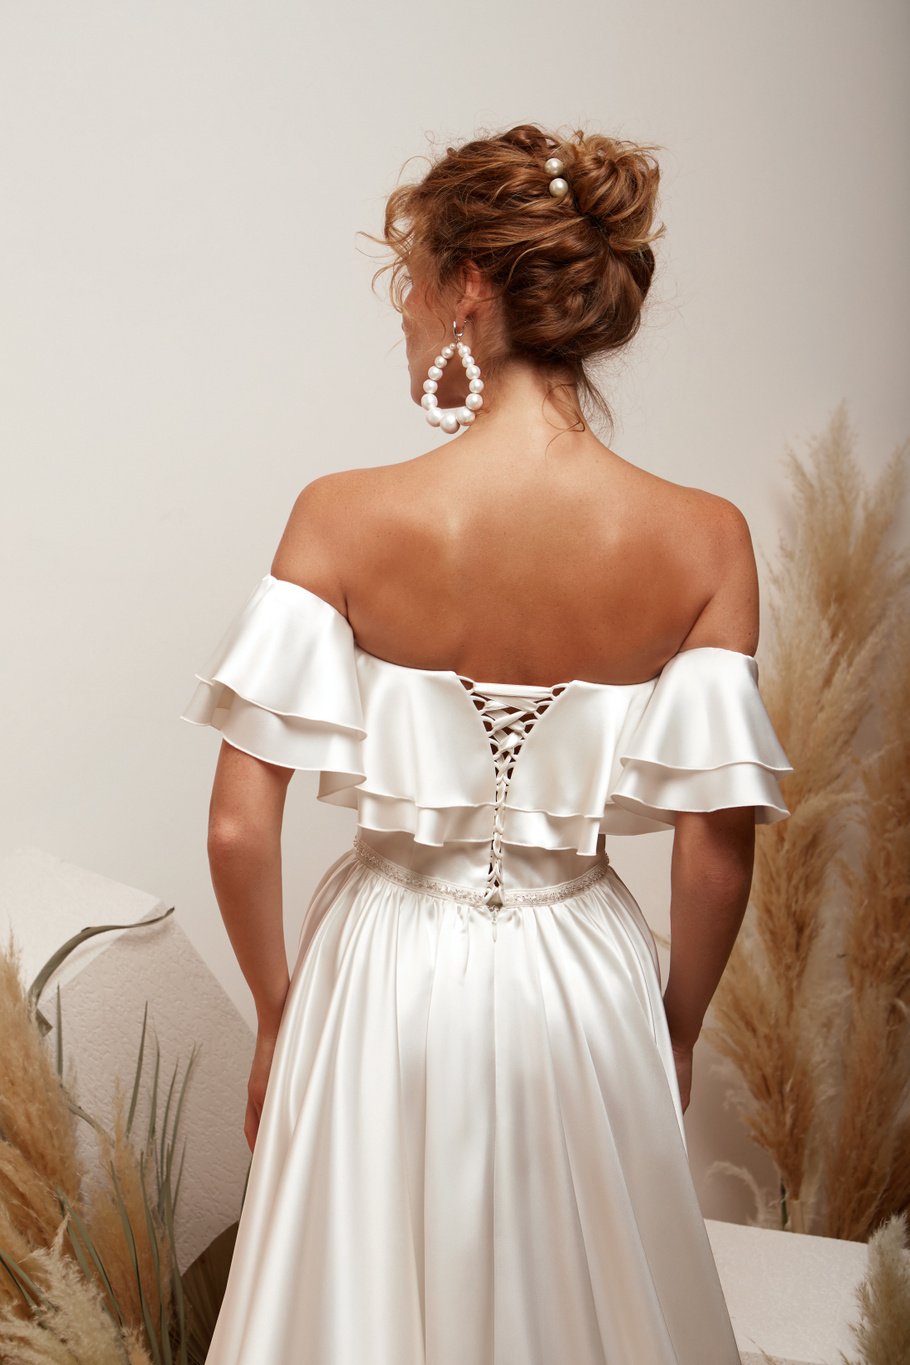 Купить свадебное платье «Магнолия» Мэрри Марк из коллекции 2020 года в Самаре